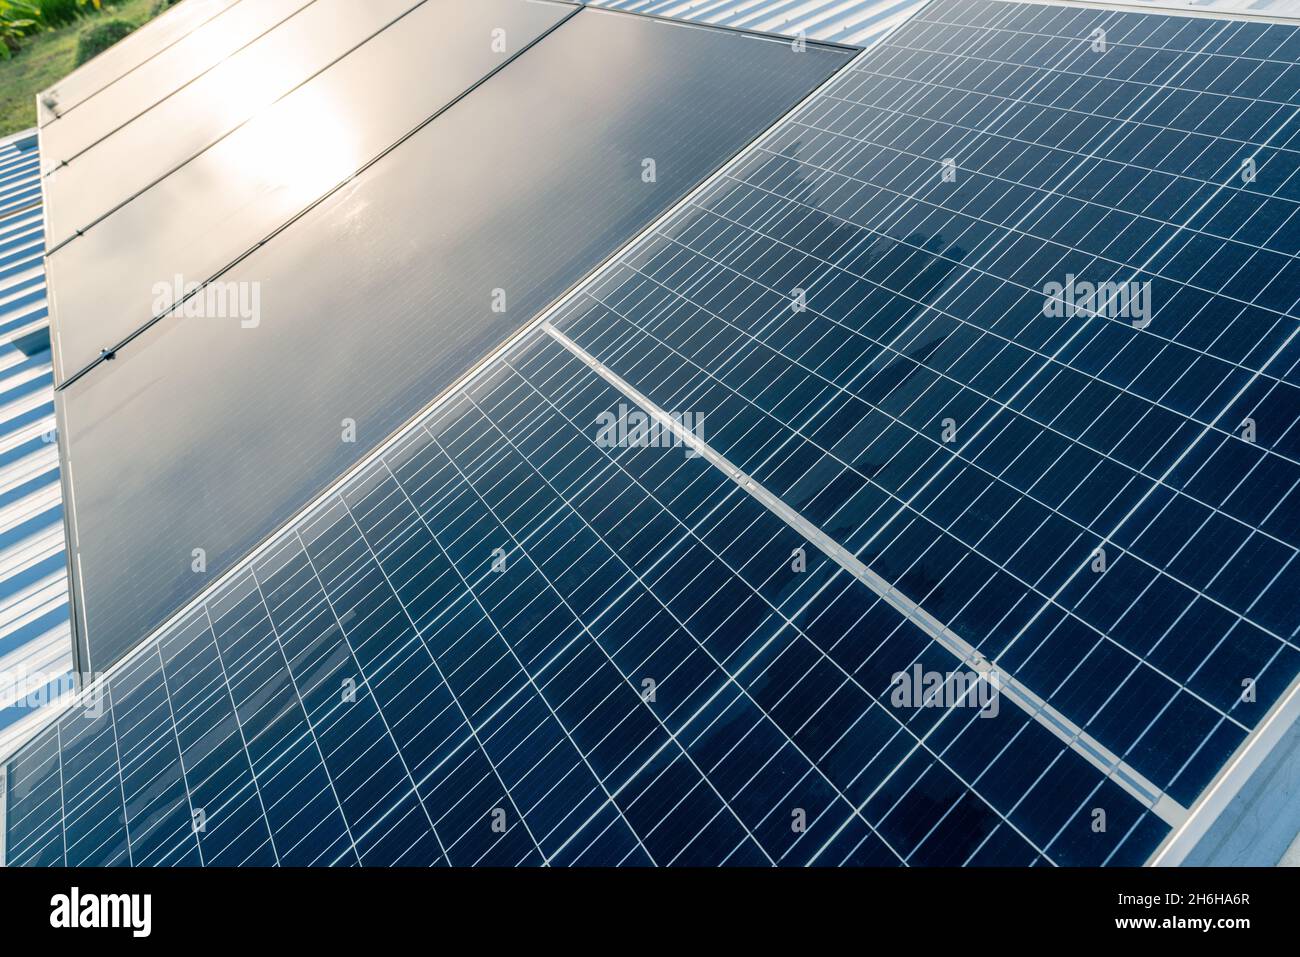 Panneaux solaires ou module photovoltaïque.L'énergie solaire pour l'énergie verte.Ressources durables.Énergies renouvelables.Technologie propre.Les panneaux de cellules solaires utilisent su Banque D'Images